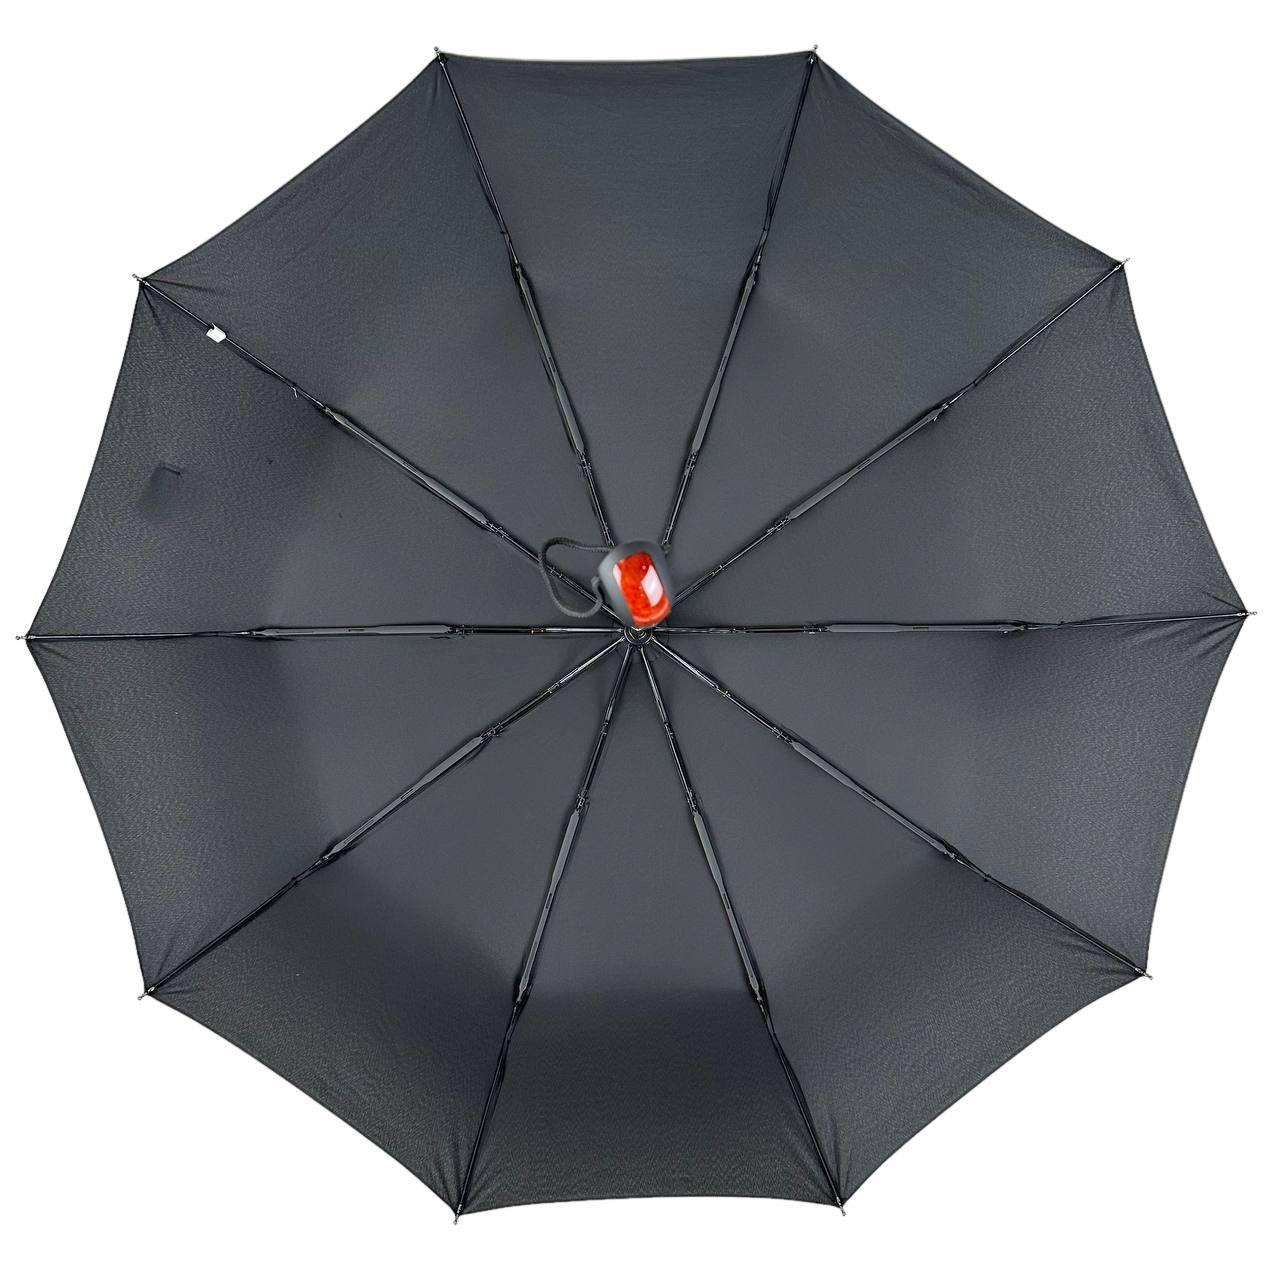 Мужской складной зонтик полный автомат Feeling Rain 104 см черный - фото 4